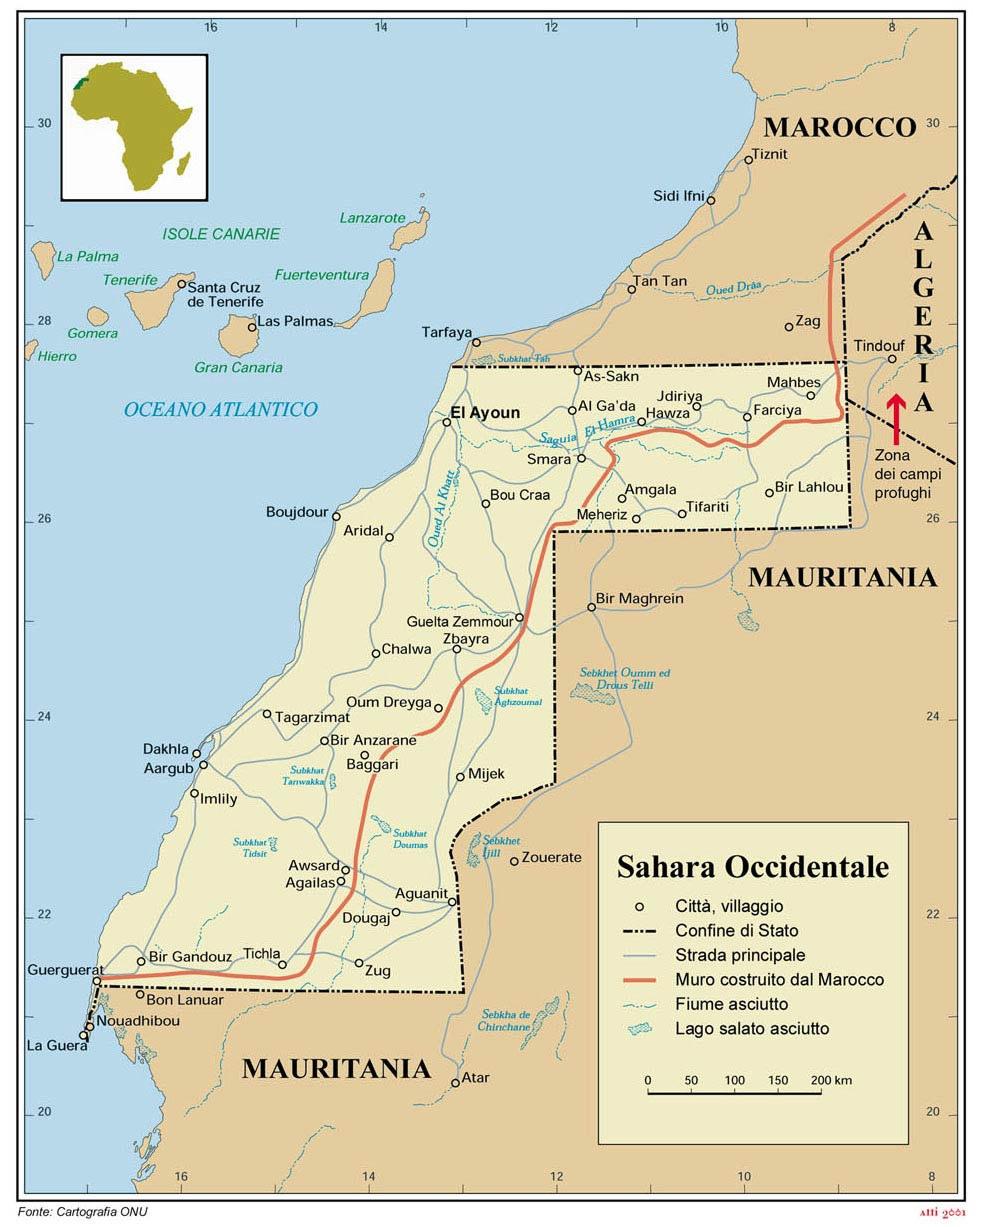 Obiettivo e descrizione del progetto. Situazione politica e ambientale nel Sahara occidentale Il Sahara Occidentale è un territorio di circa 266.